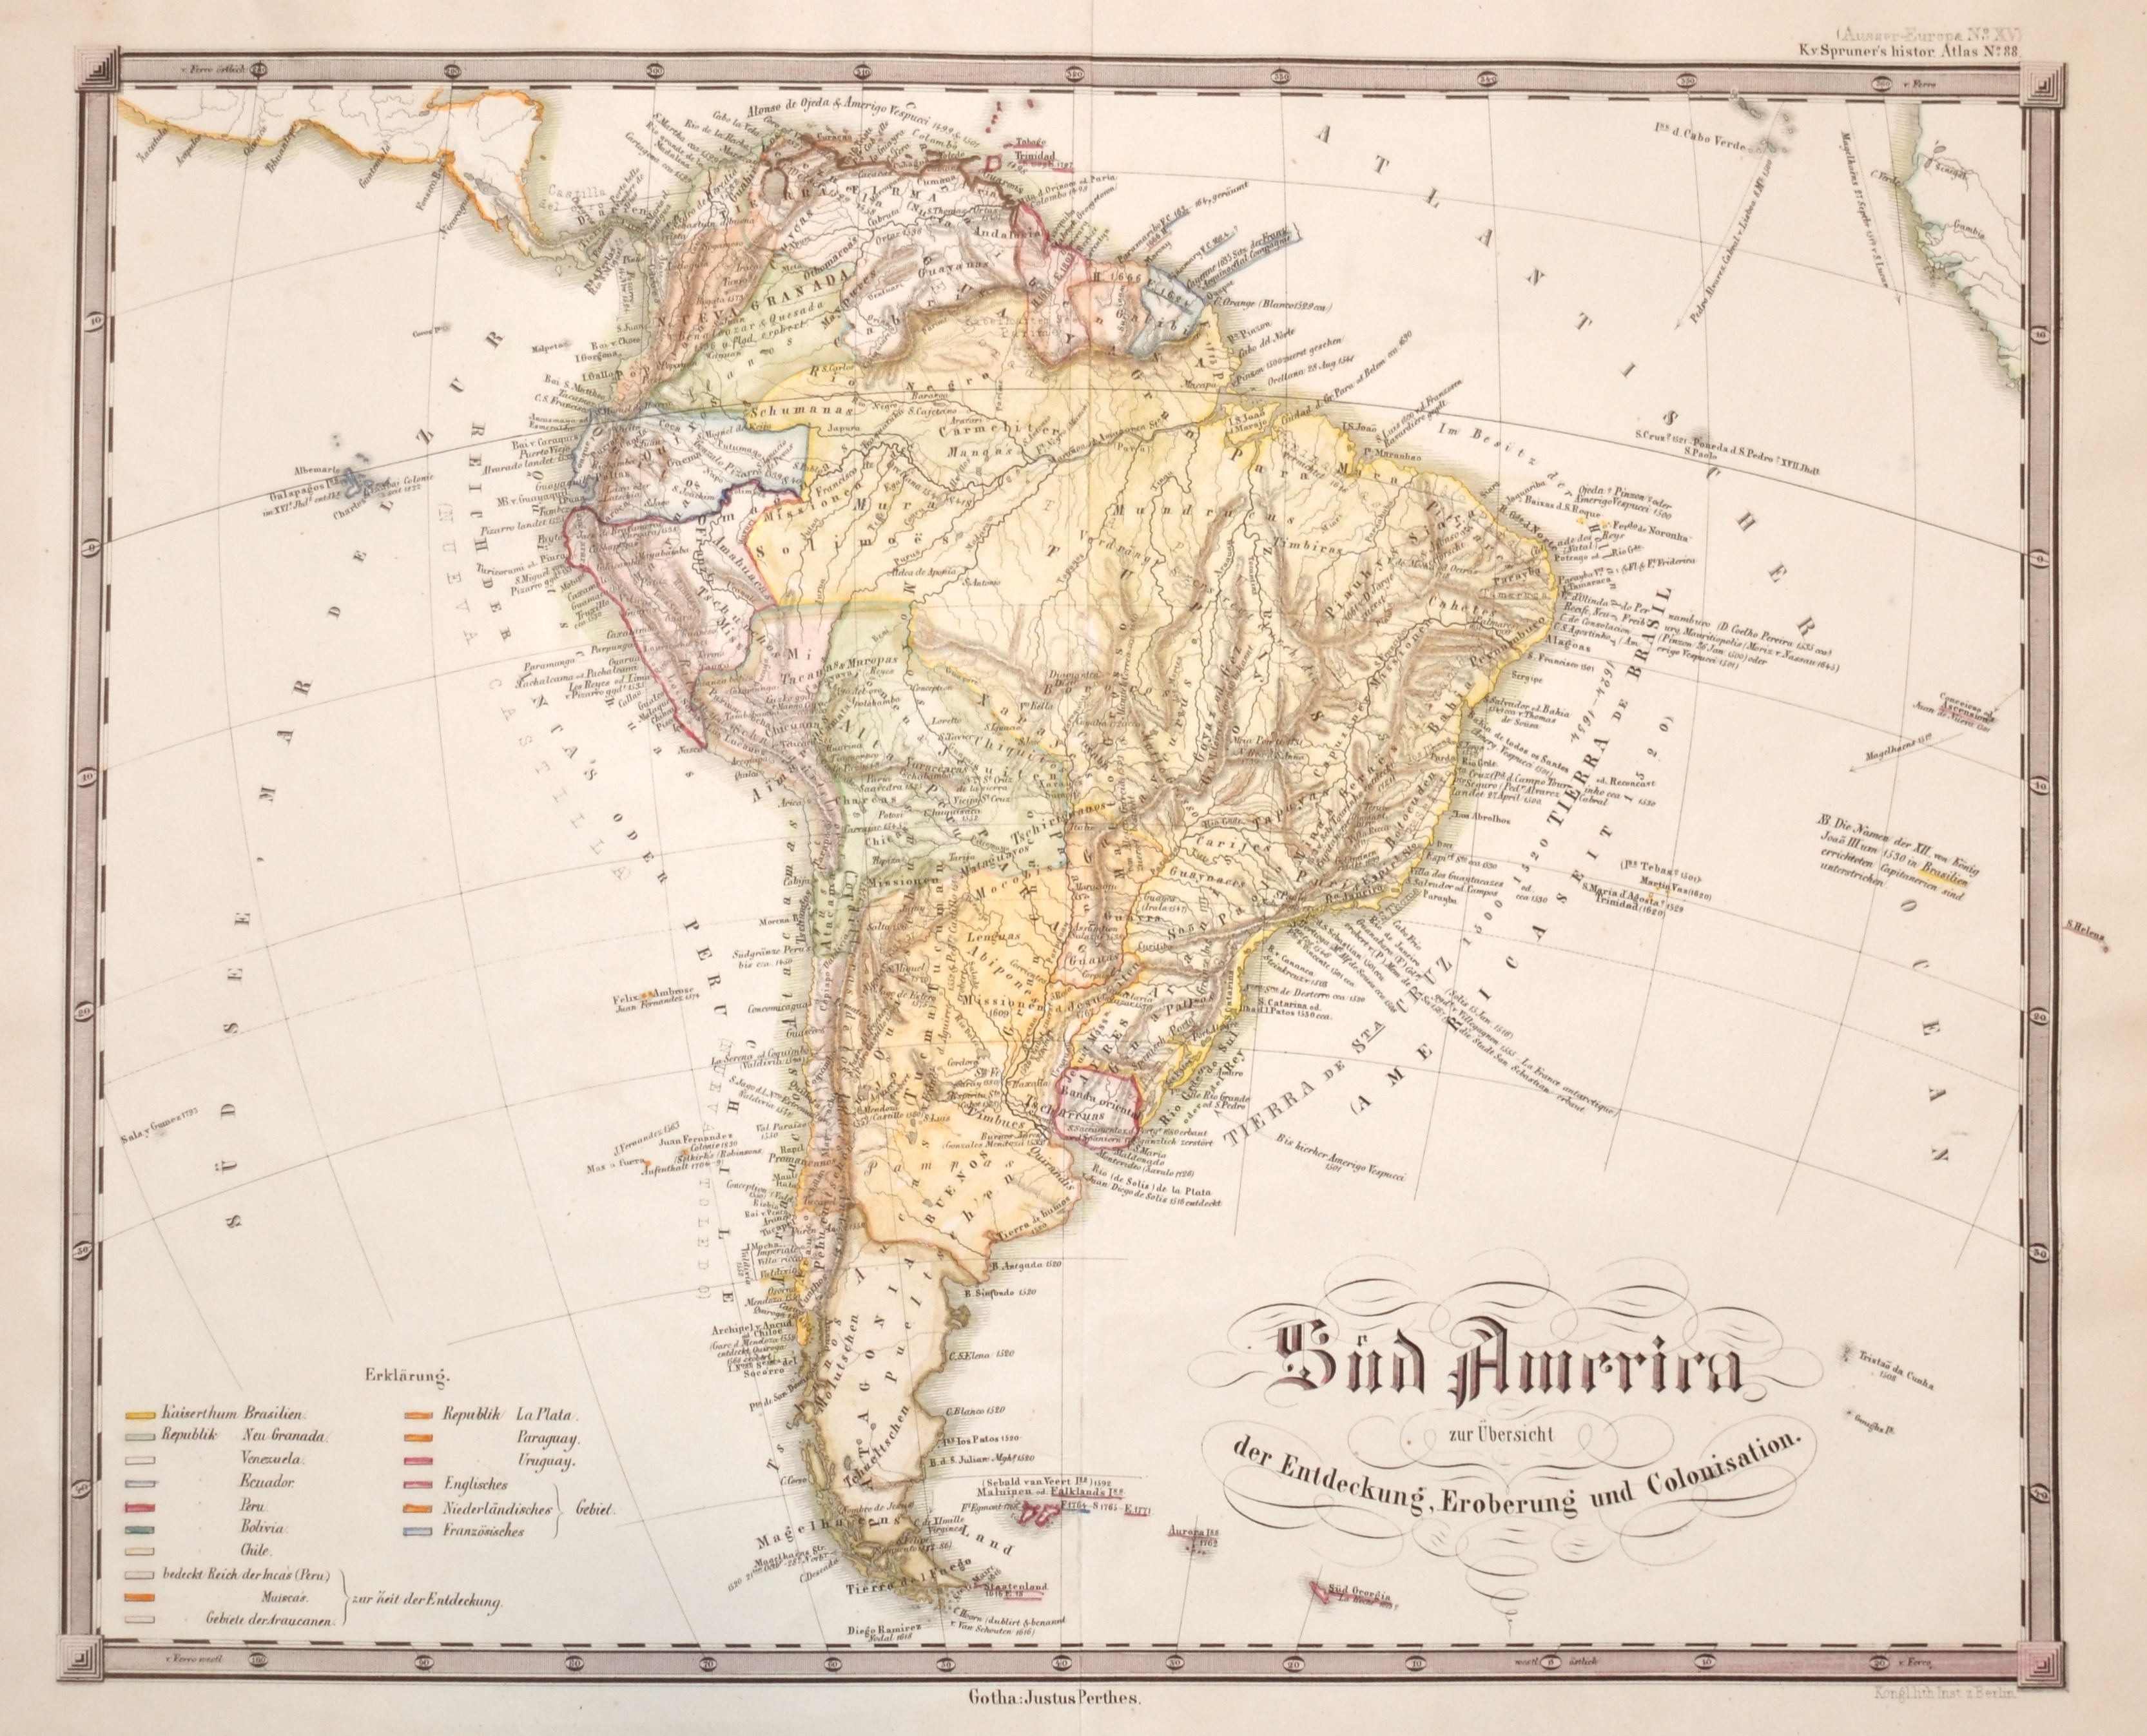 Perthes Justus Süd America zur Übersicht der Entdeckung, Eroberung und Colonisation